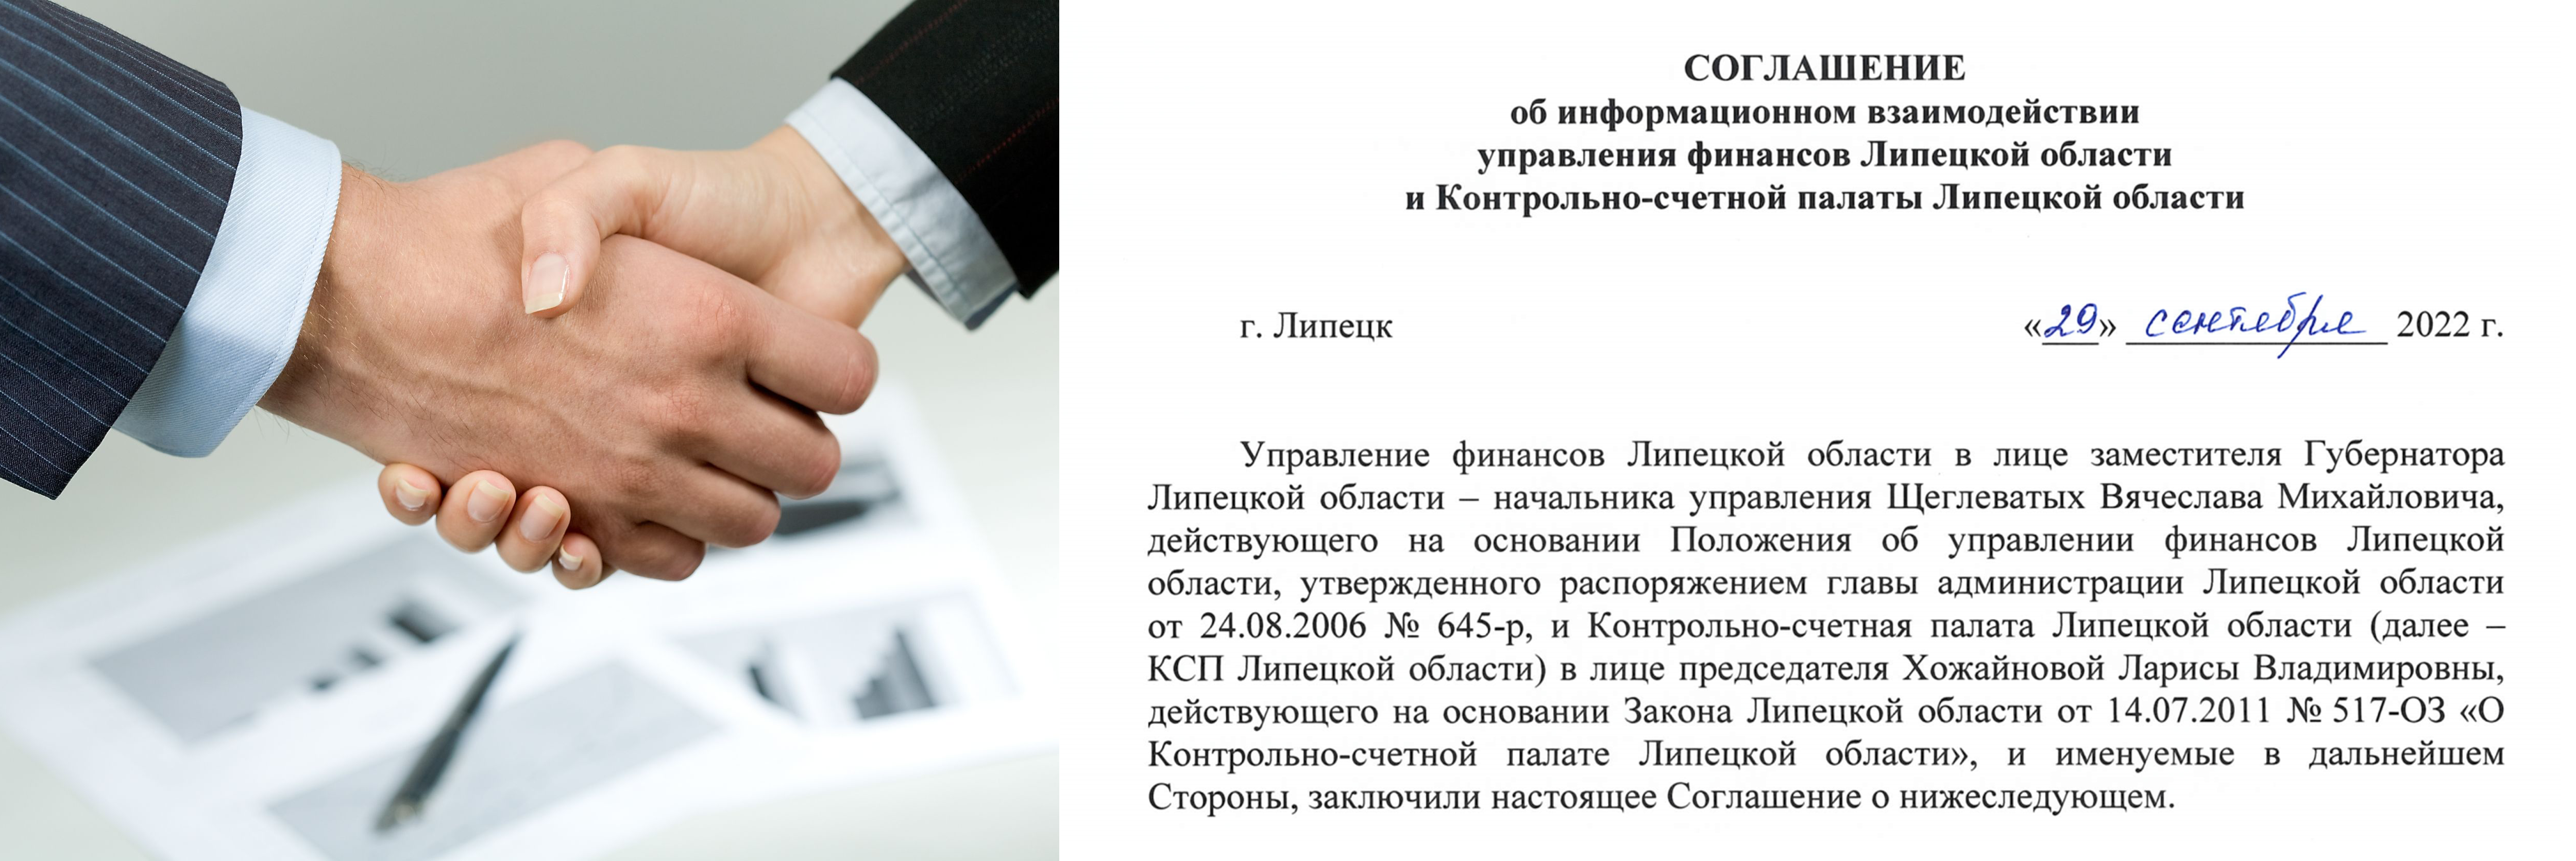 Контрольно-счетной палатой Липецкой области  заключено соглашение об информационном взаимодействии с управлением финансов Липецкой области